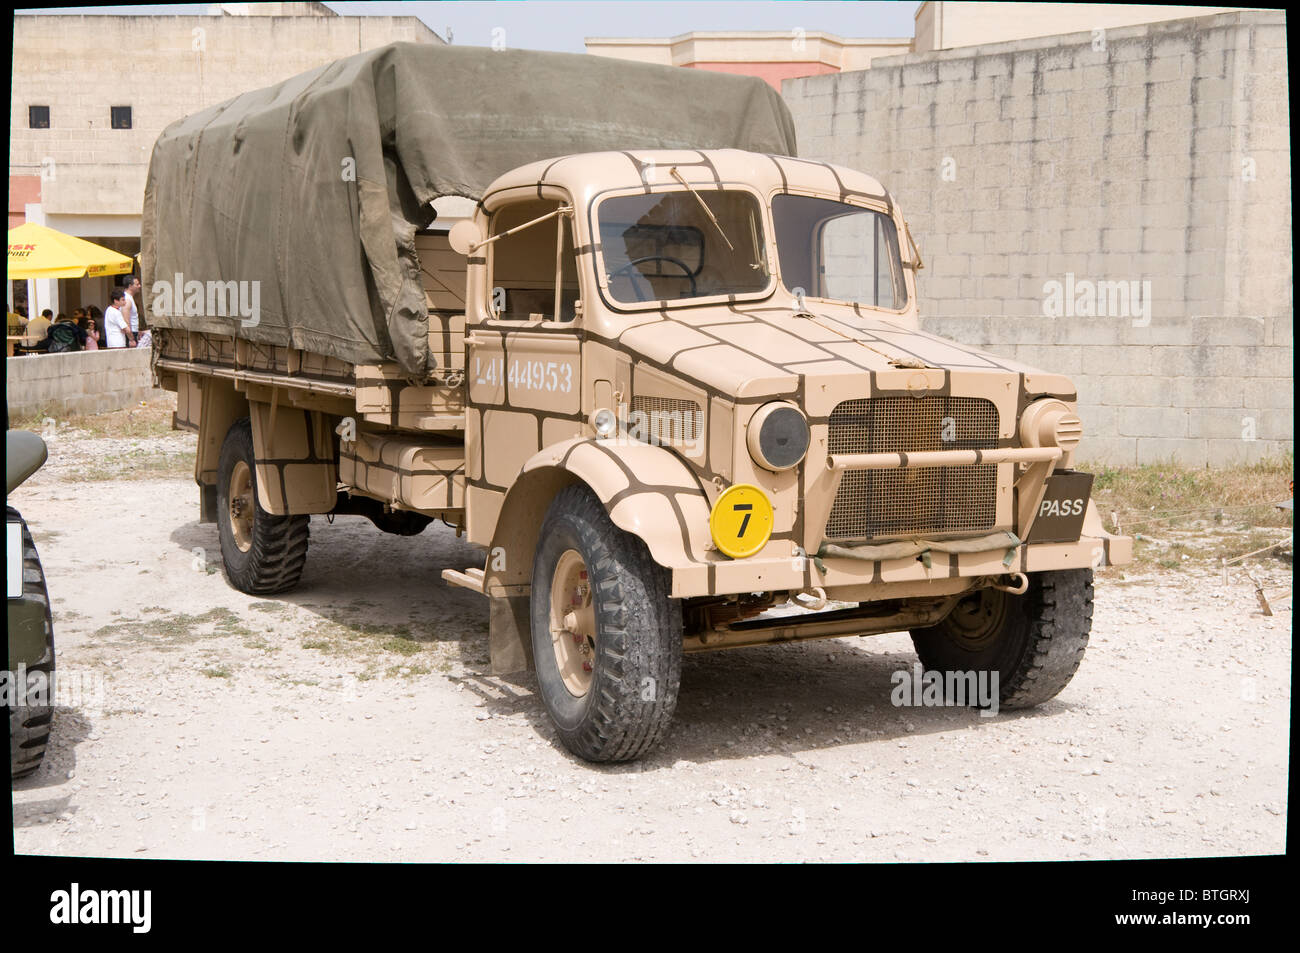 Il Bedford camion è visto prendendo parte al 2009 Mtarfa militare giorno. Il camion è stato restaurato in colori militari Foto Stock